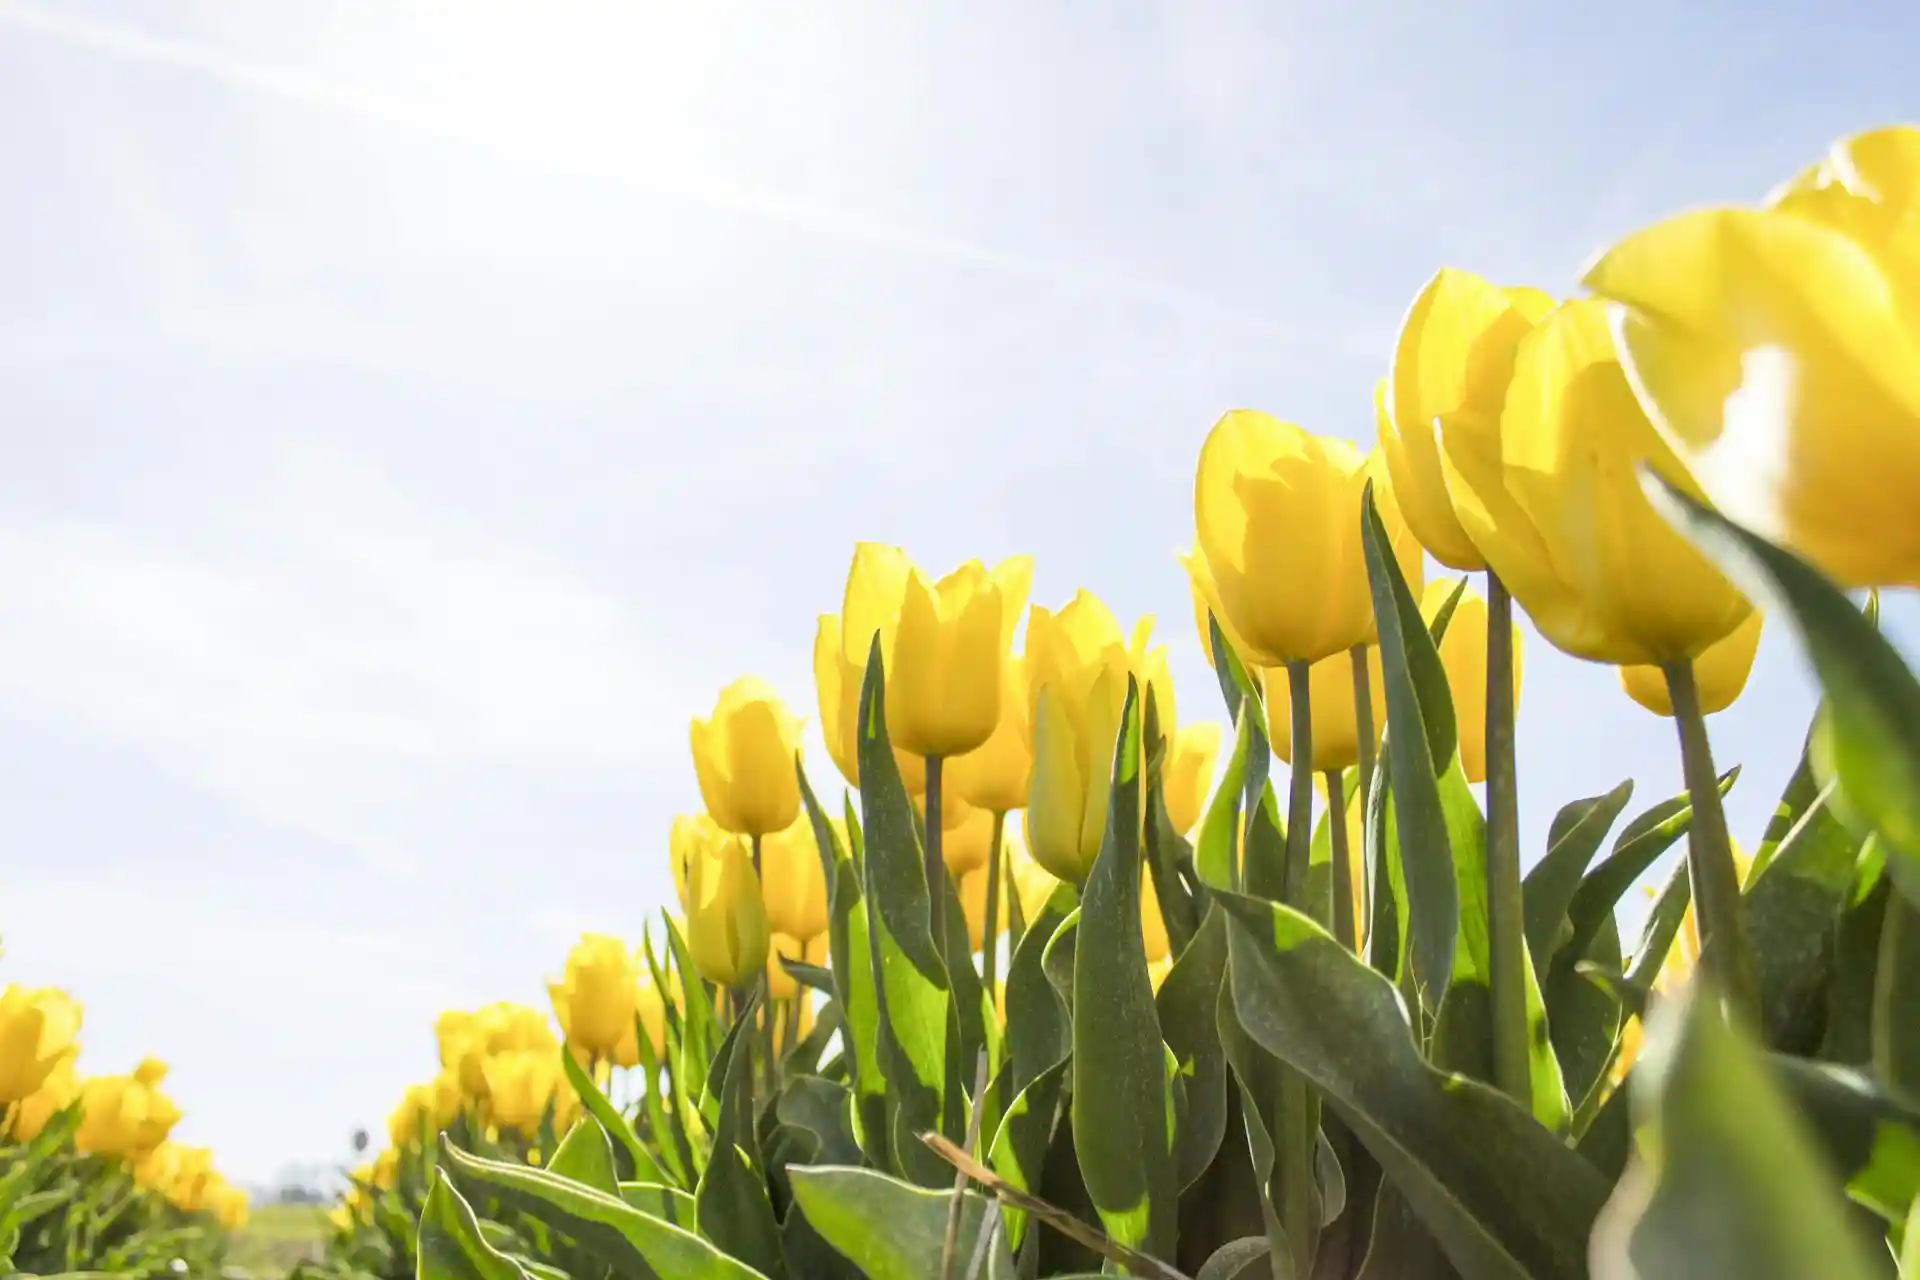 I fiori del mese di maggio: guida alle specie più colorate e profumate. Consigli su come coltivarli al meglio nel proprio spazio verde